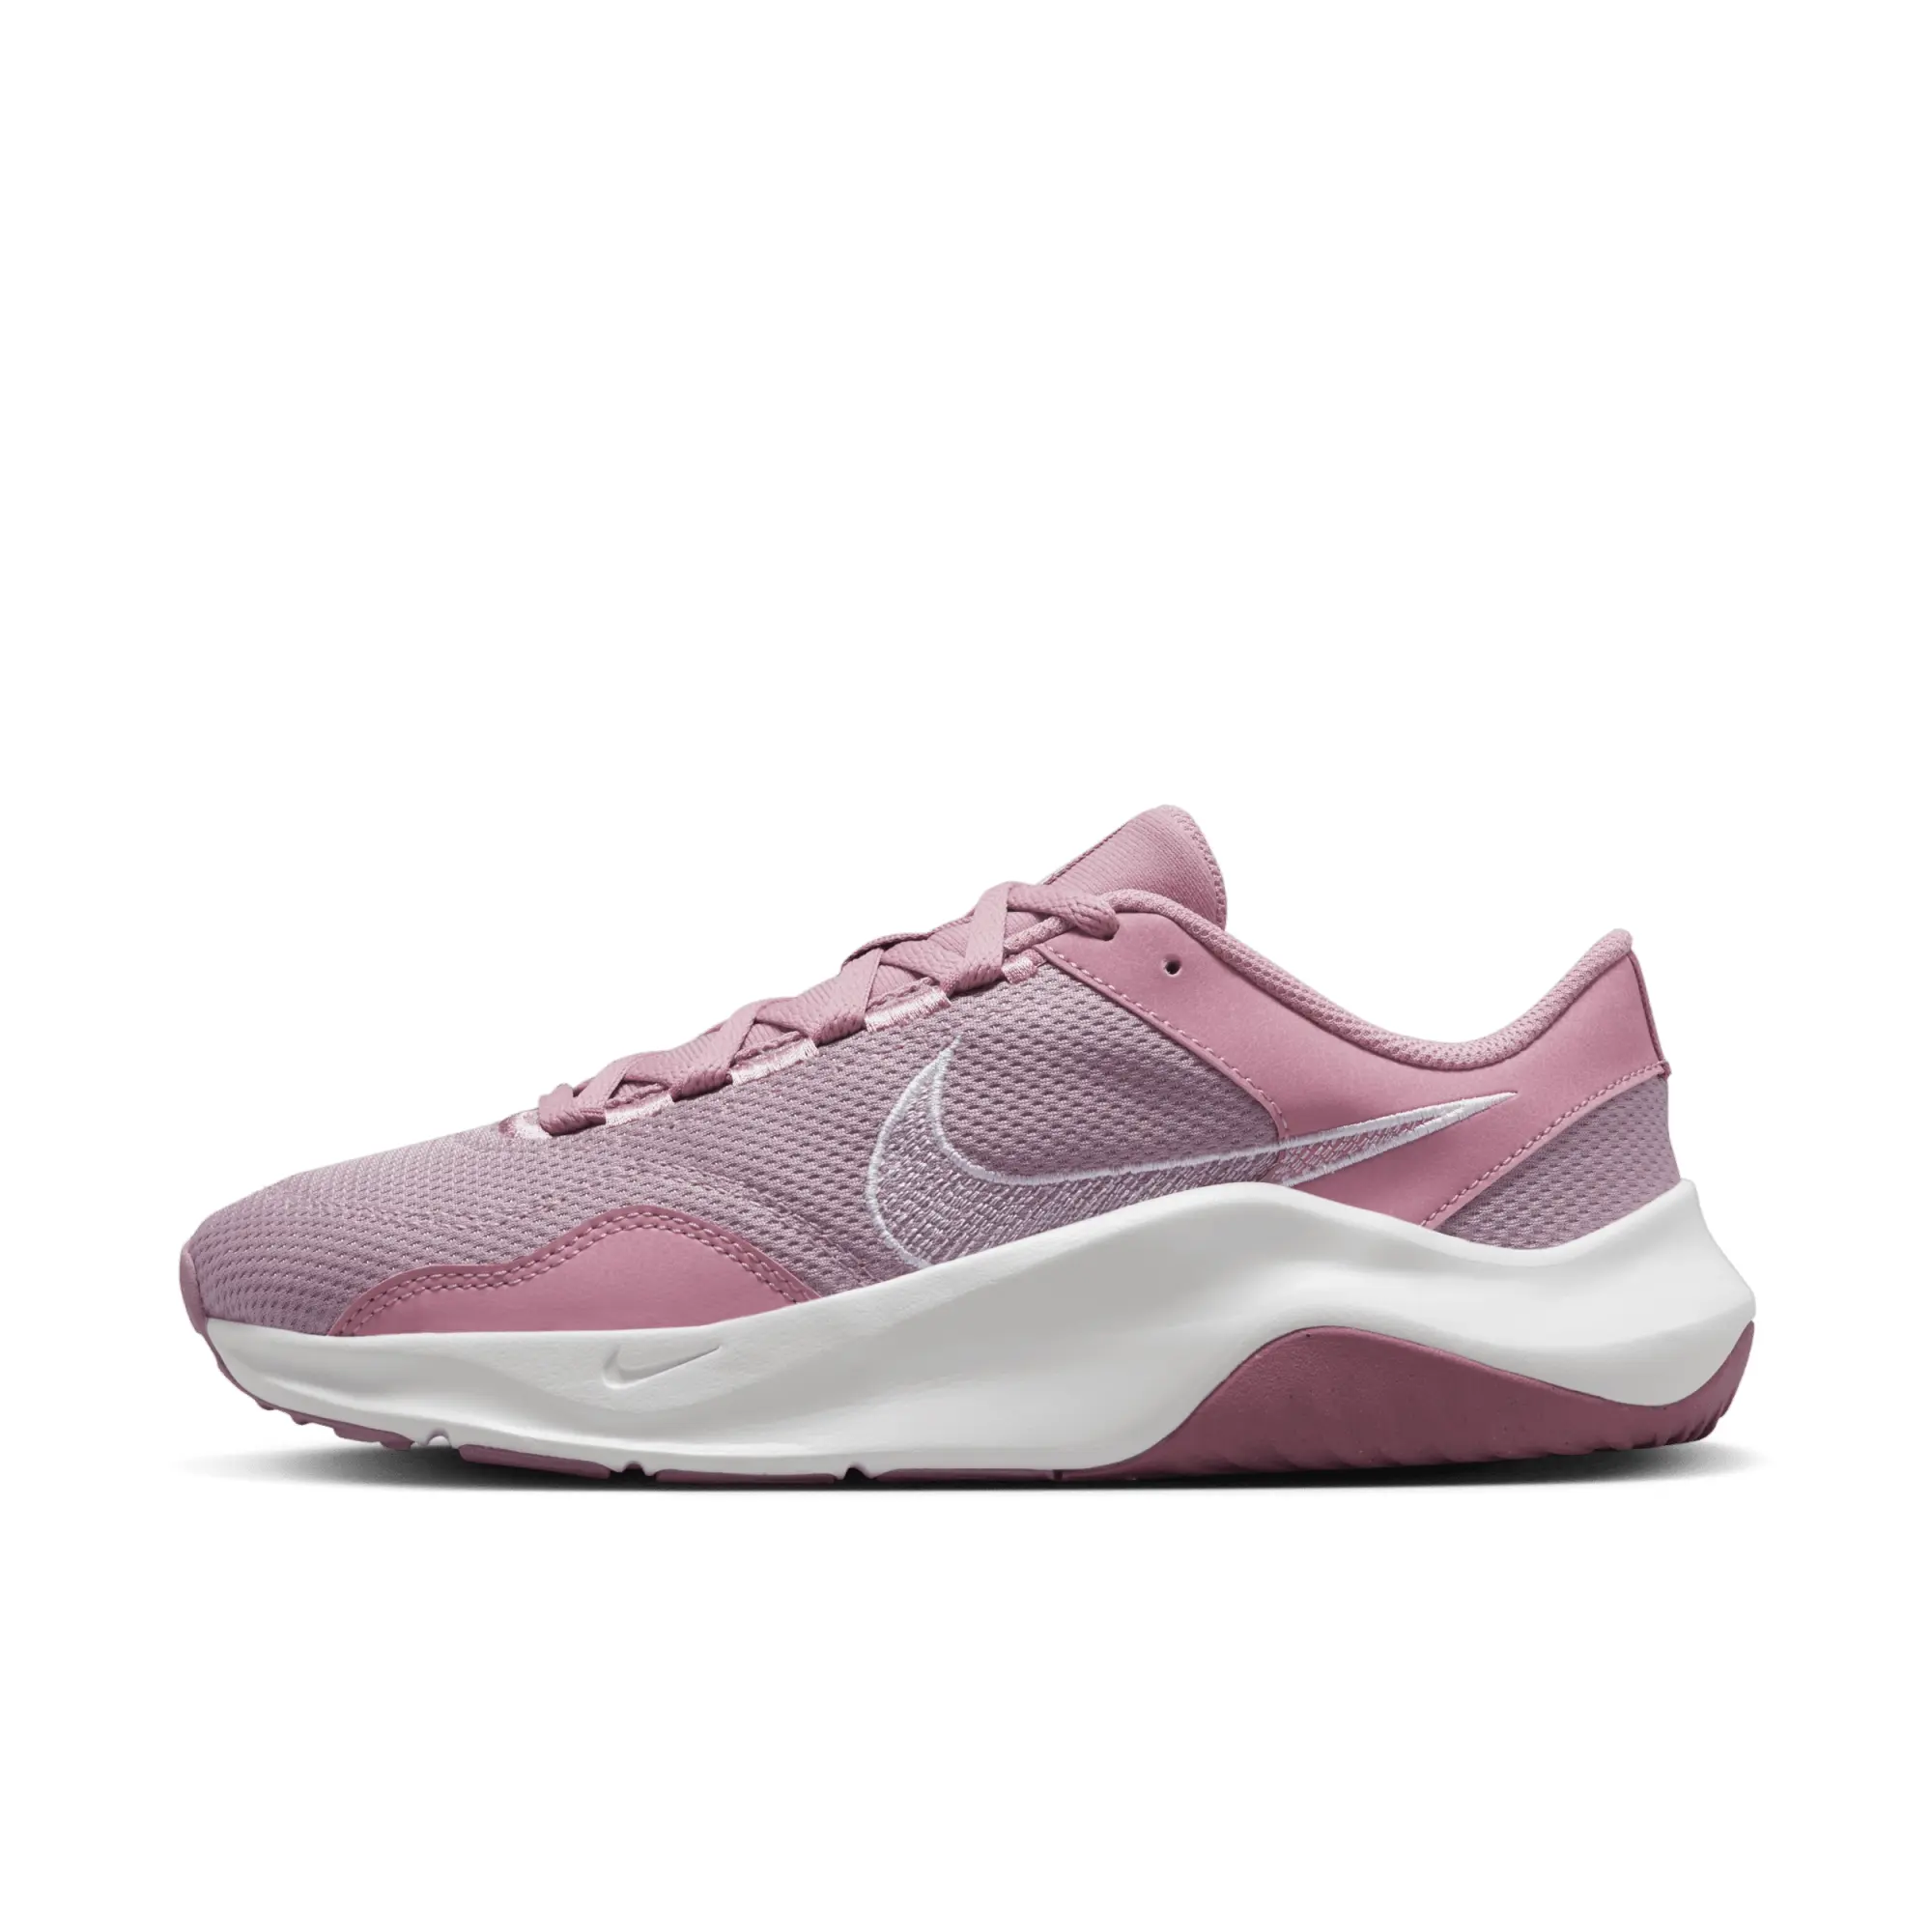 Nike Legend 3 - Pink/White, Pink/White